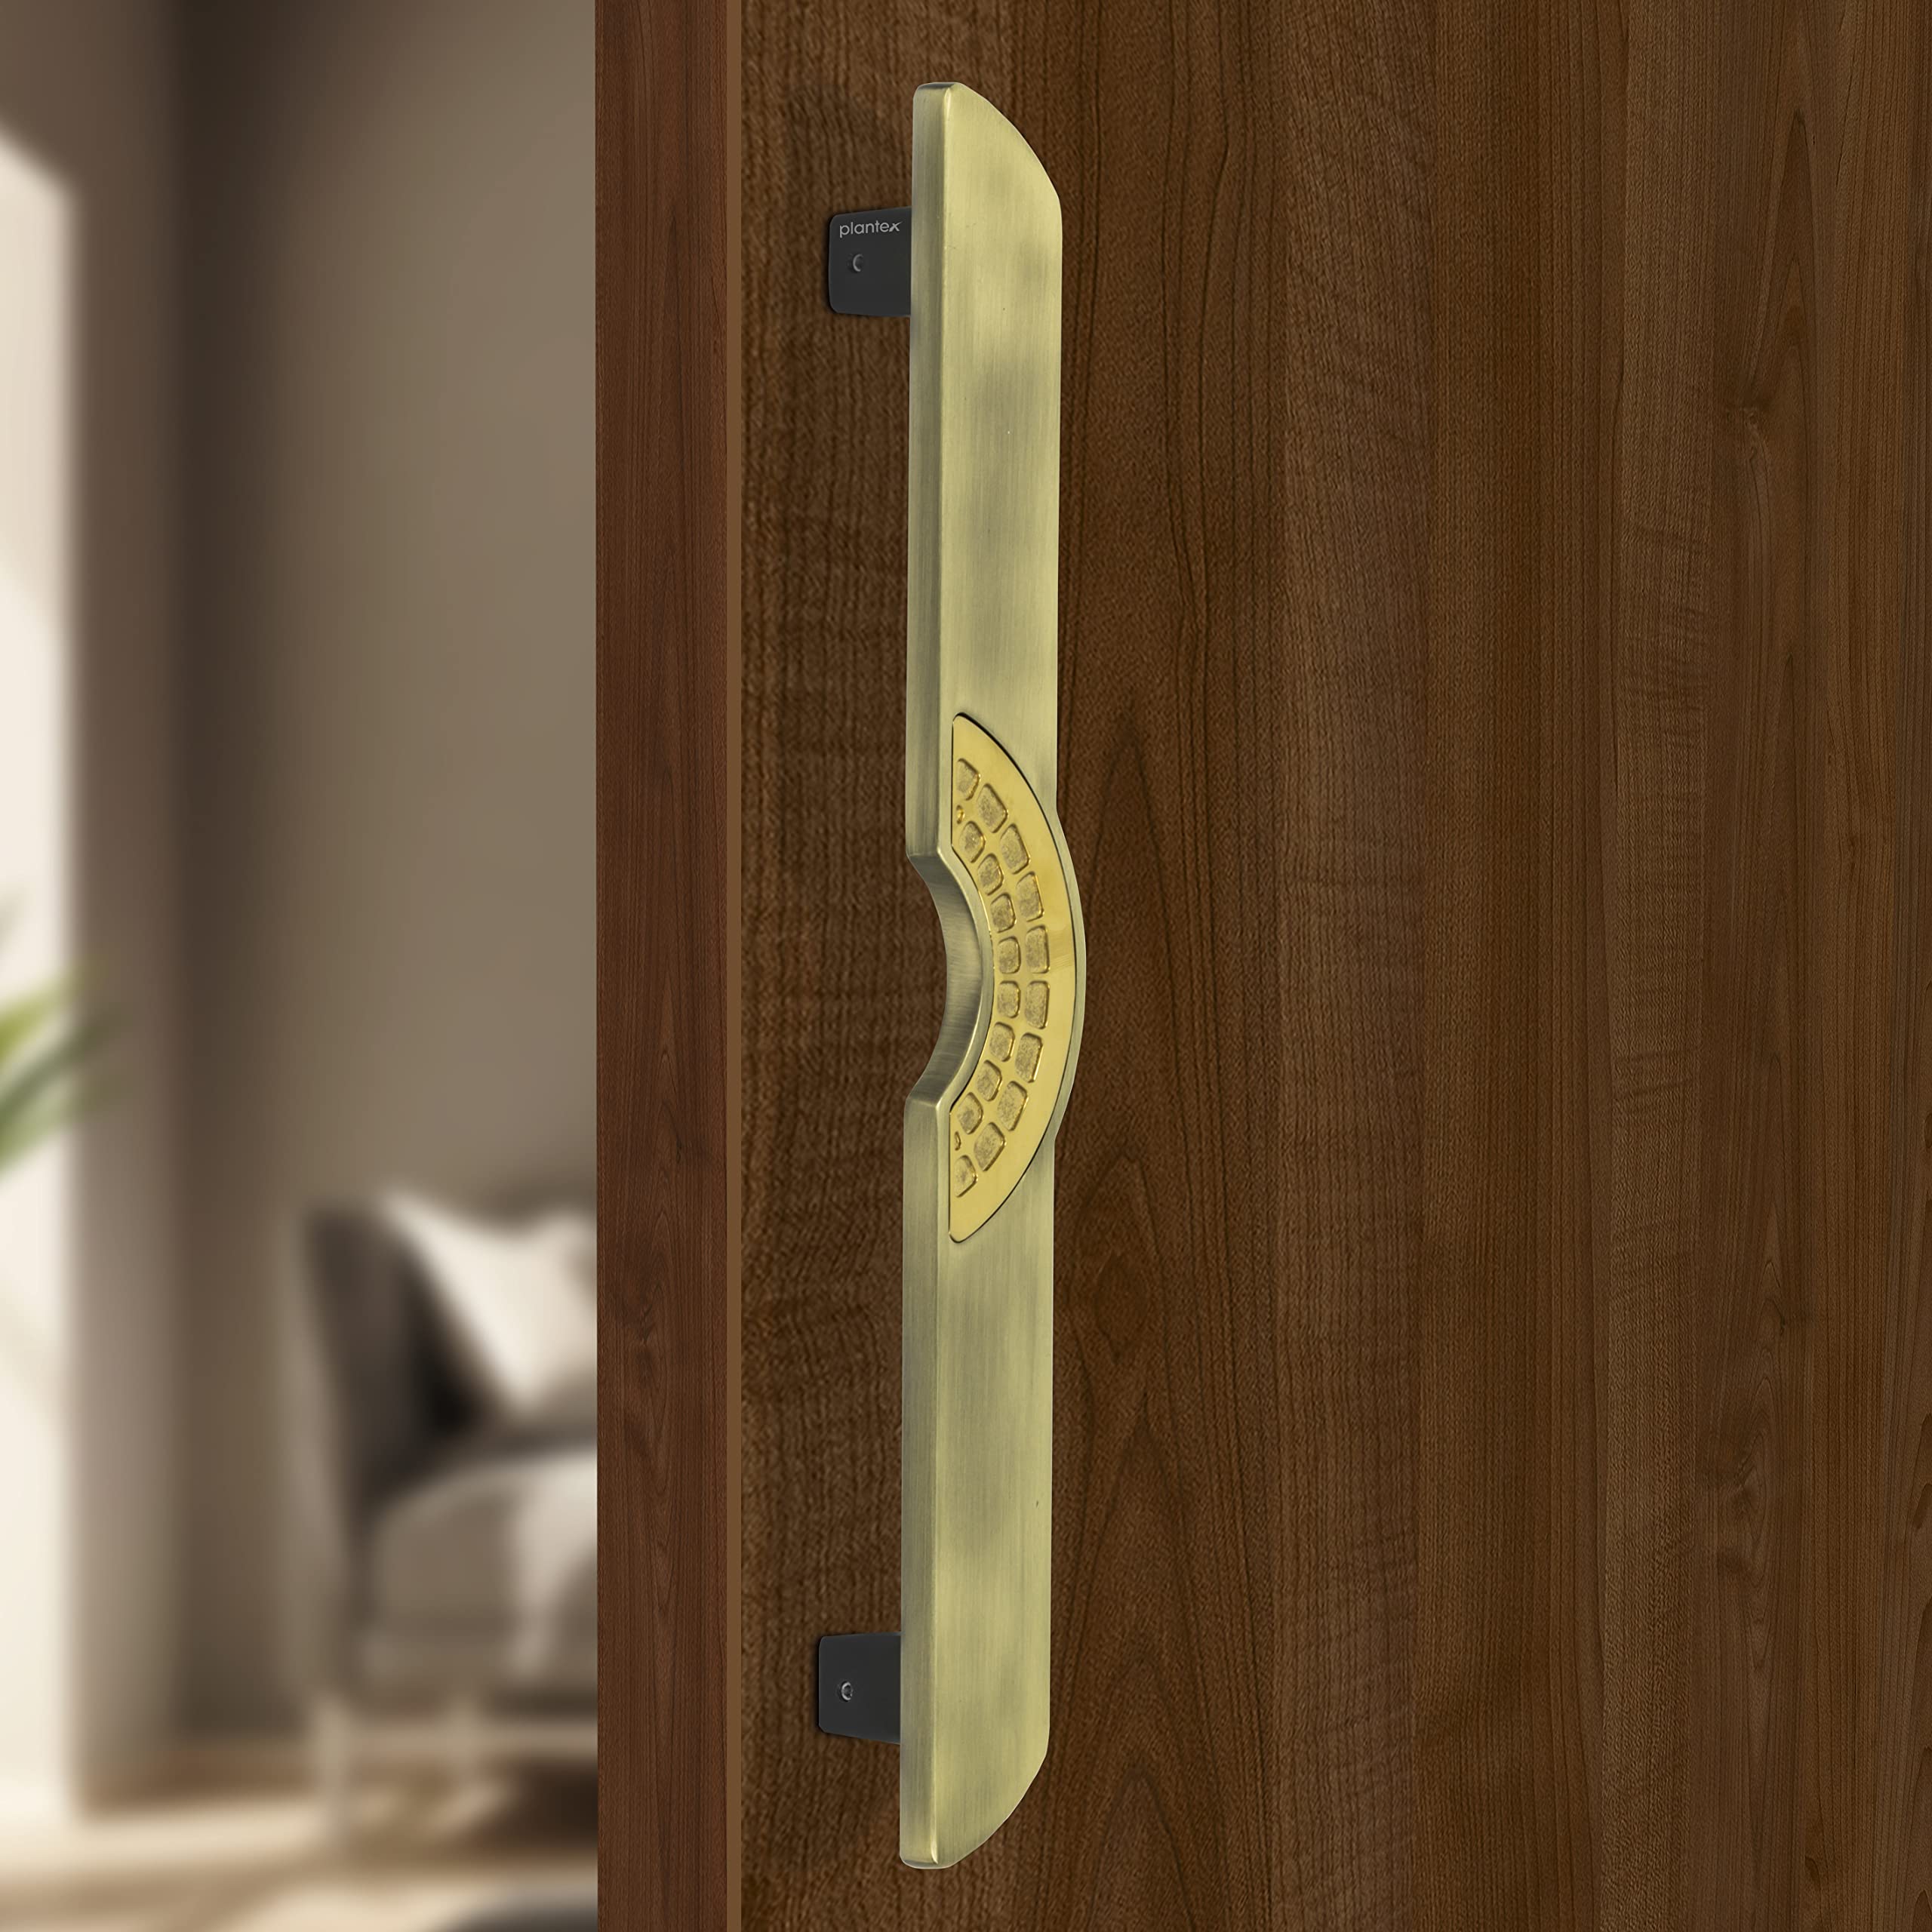 Plantex Ultron Door Handle/Door & Home Decor/15 Inch Main Door Handle/Door Pull Push Handle – Pack of 1 (316,Brass Antique and Gold Finish)